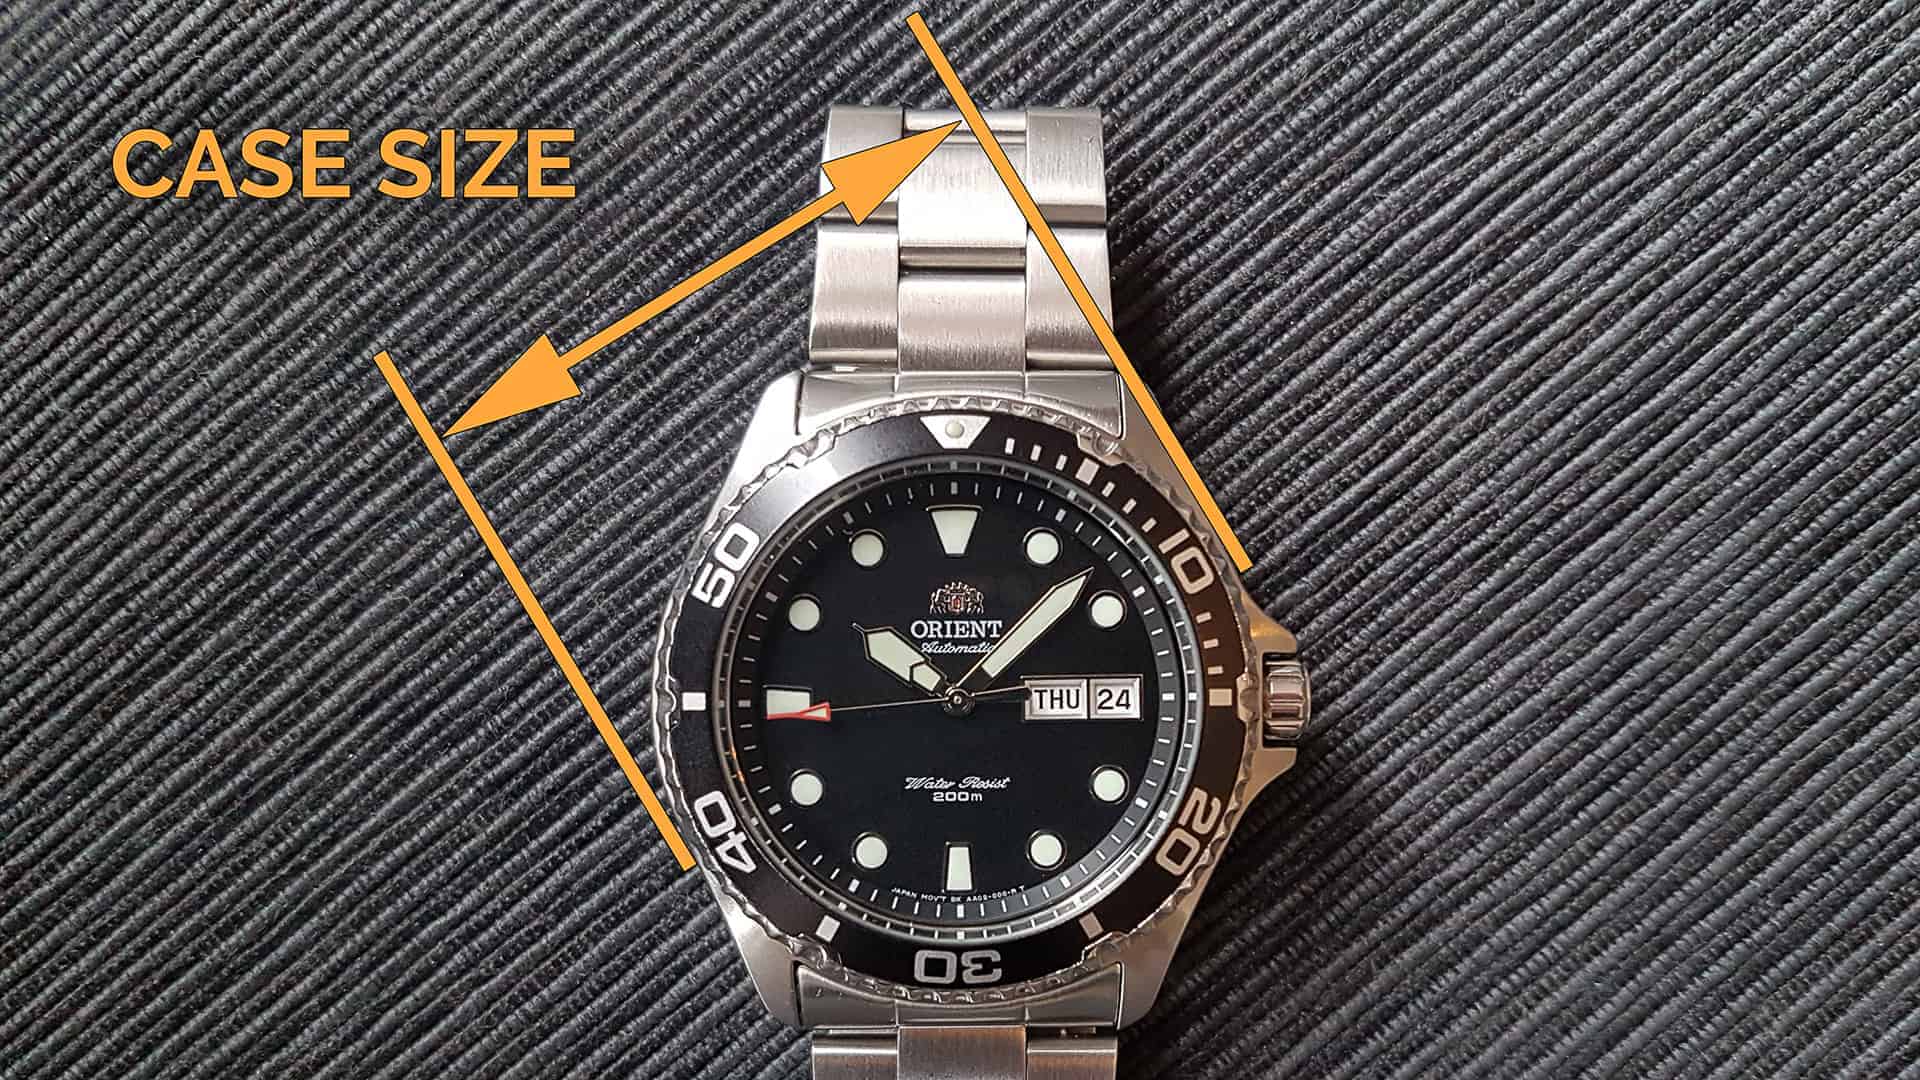 Watch case size